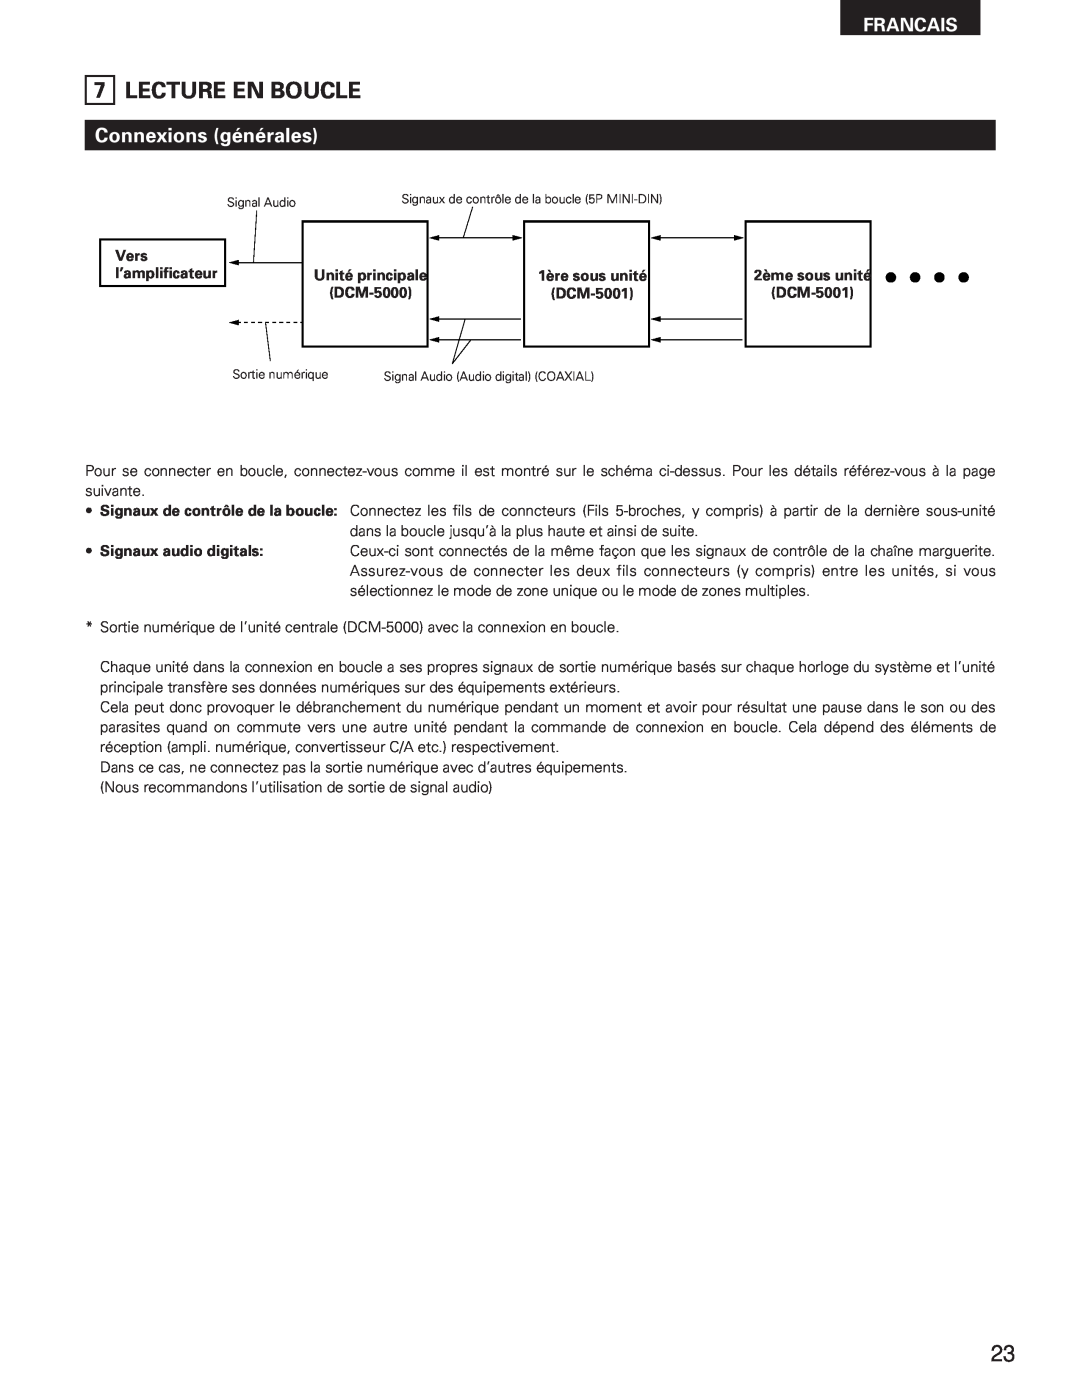 Denon DCM-5001 manual Lecture En Boucle, Connexions générales, Francais 